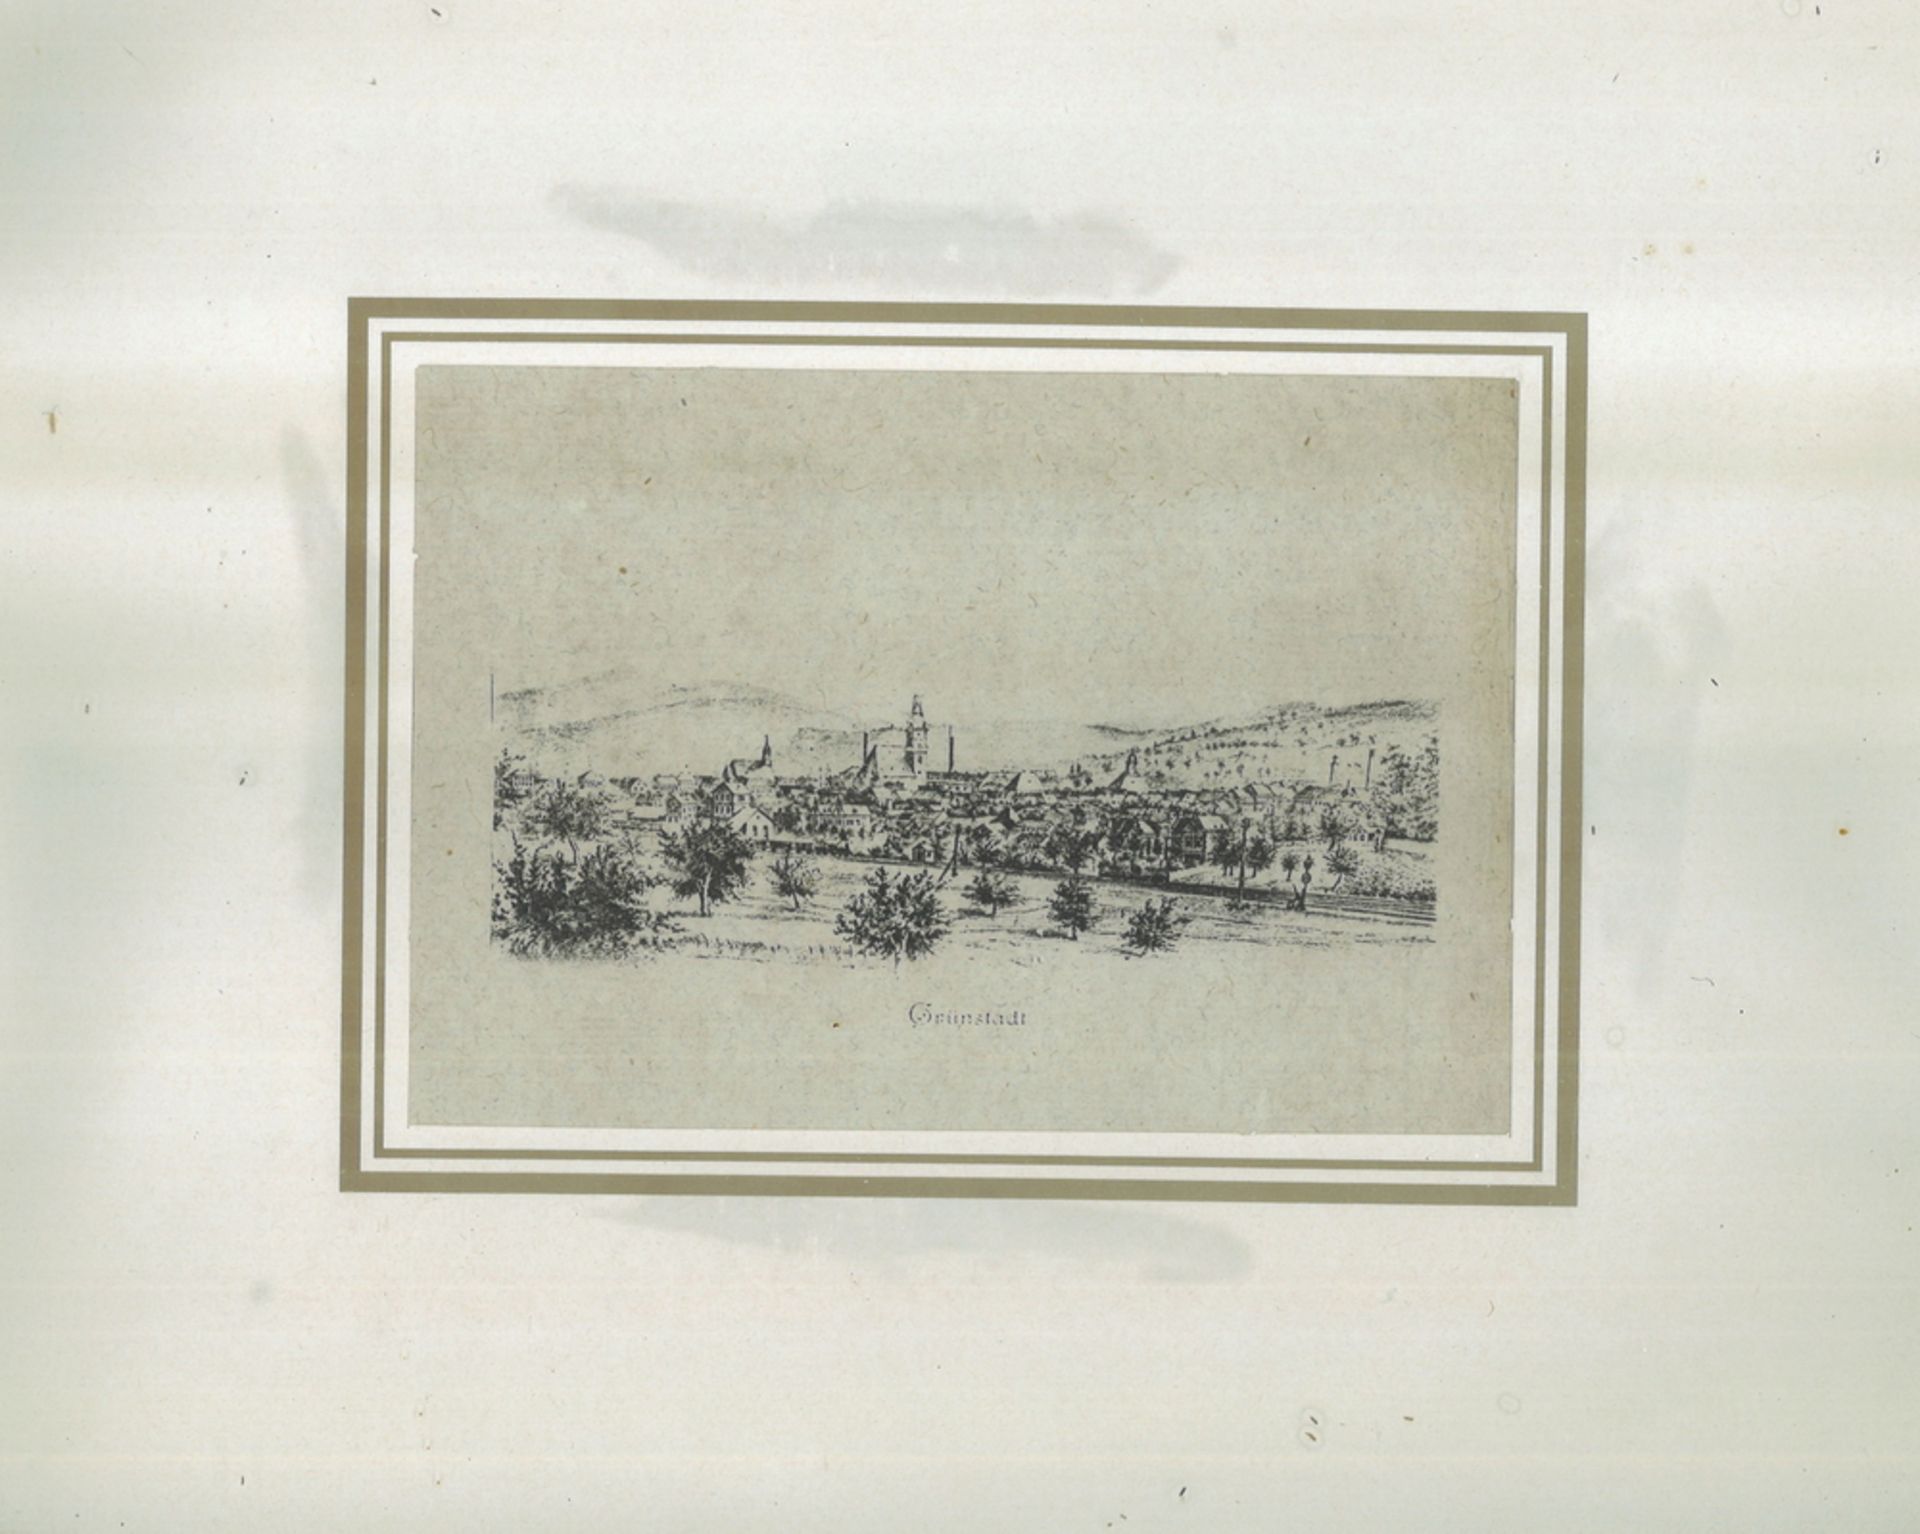 Stich "Grünstadt" um 1890, hinter Glas gerahmt. Gesamtmaße: Höhe ca. 25,5 cm, Breite ca. 31 cm